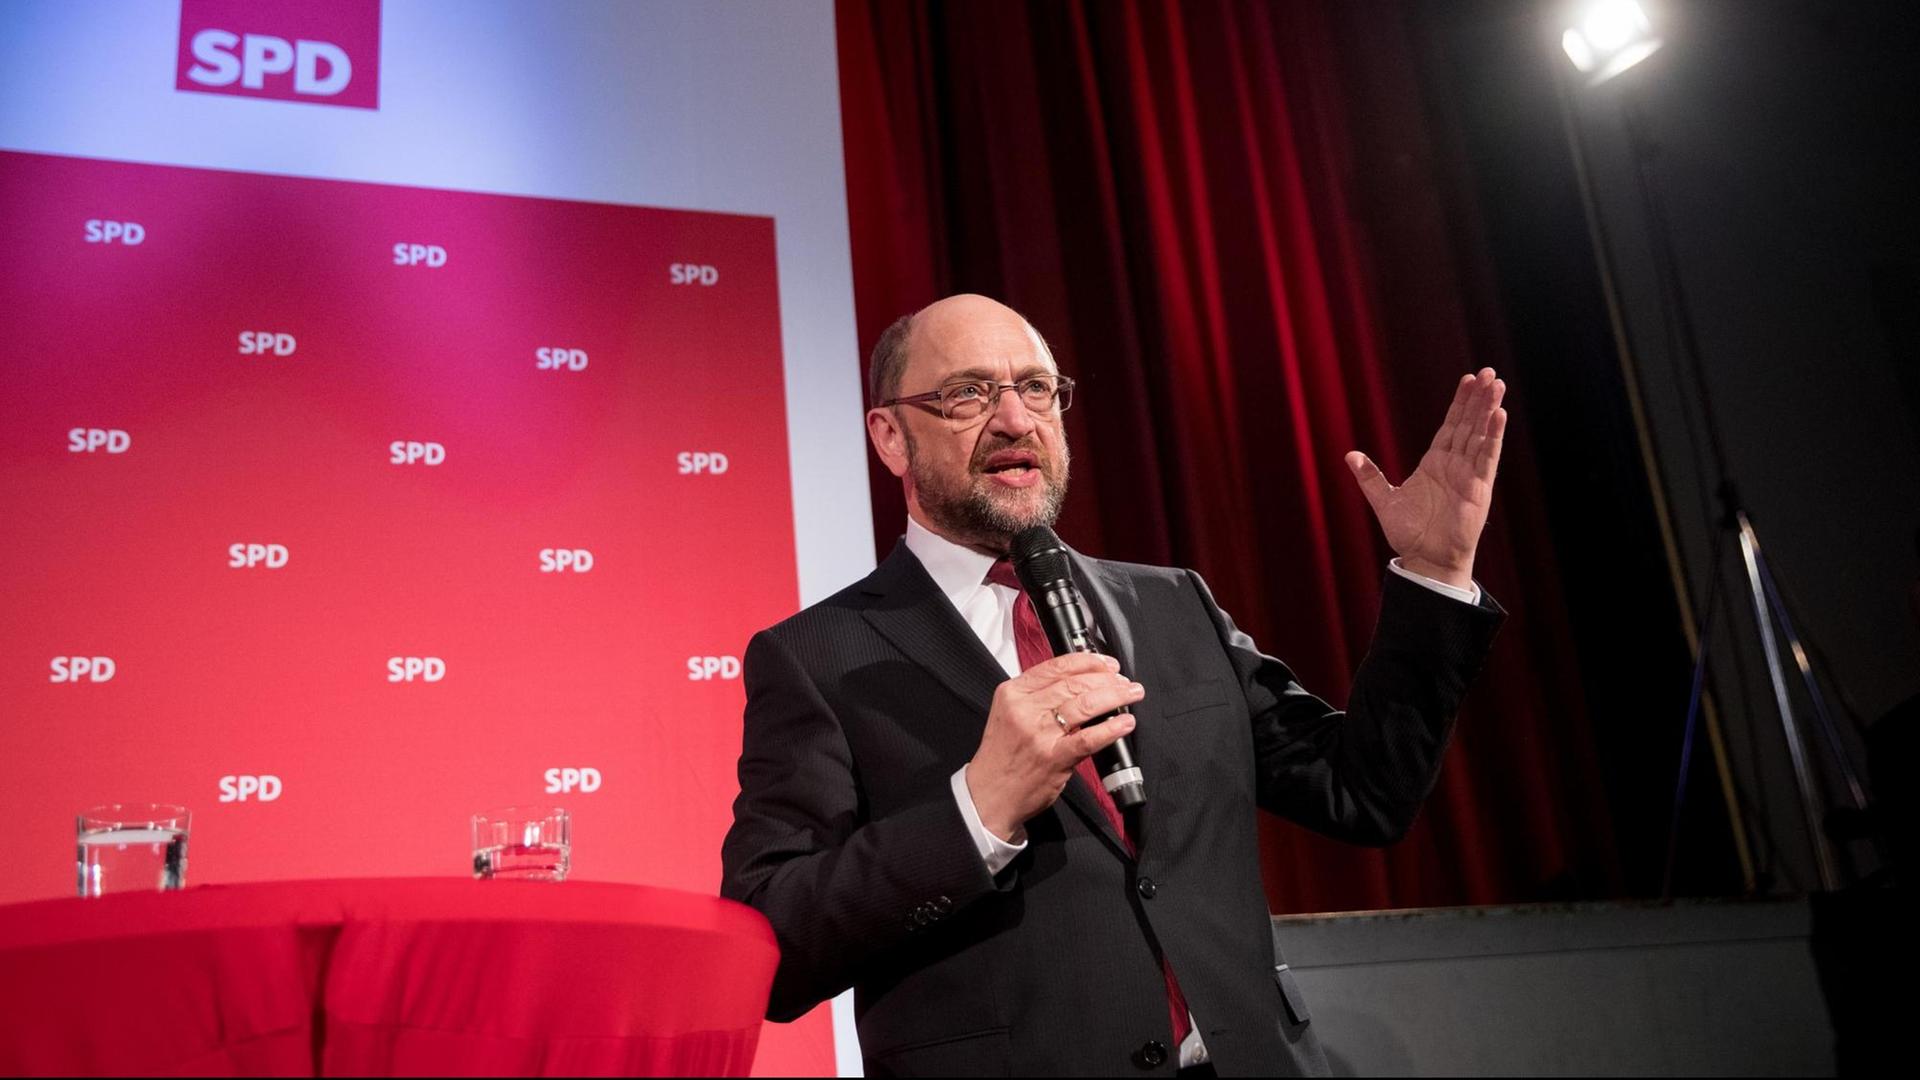 SPD-Kanzlerkandidat Martin Schulz bei einer Veranstaltung der Sozialdemokraten in Ahrensburg, Schleswig-Holstein